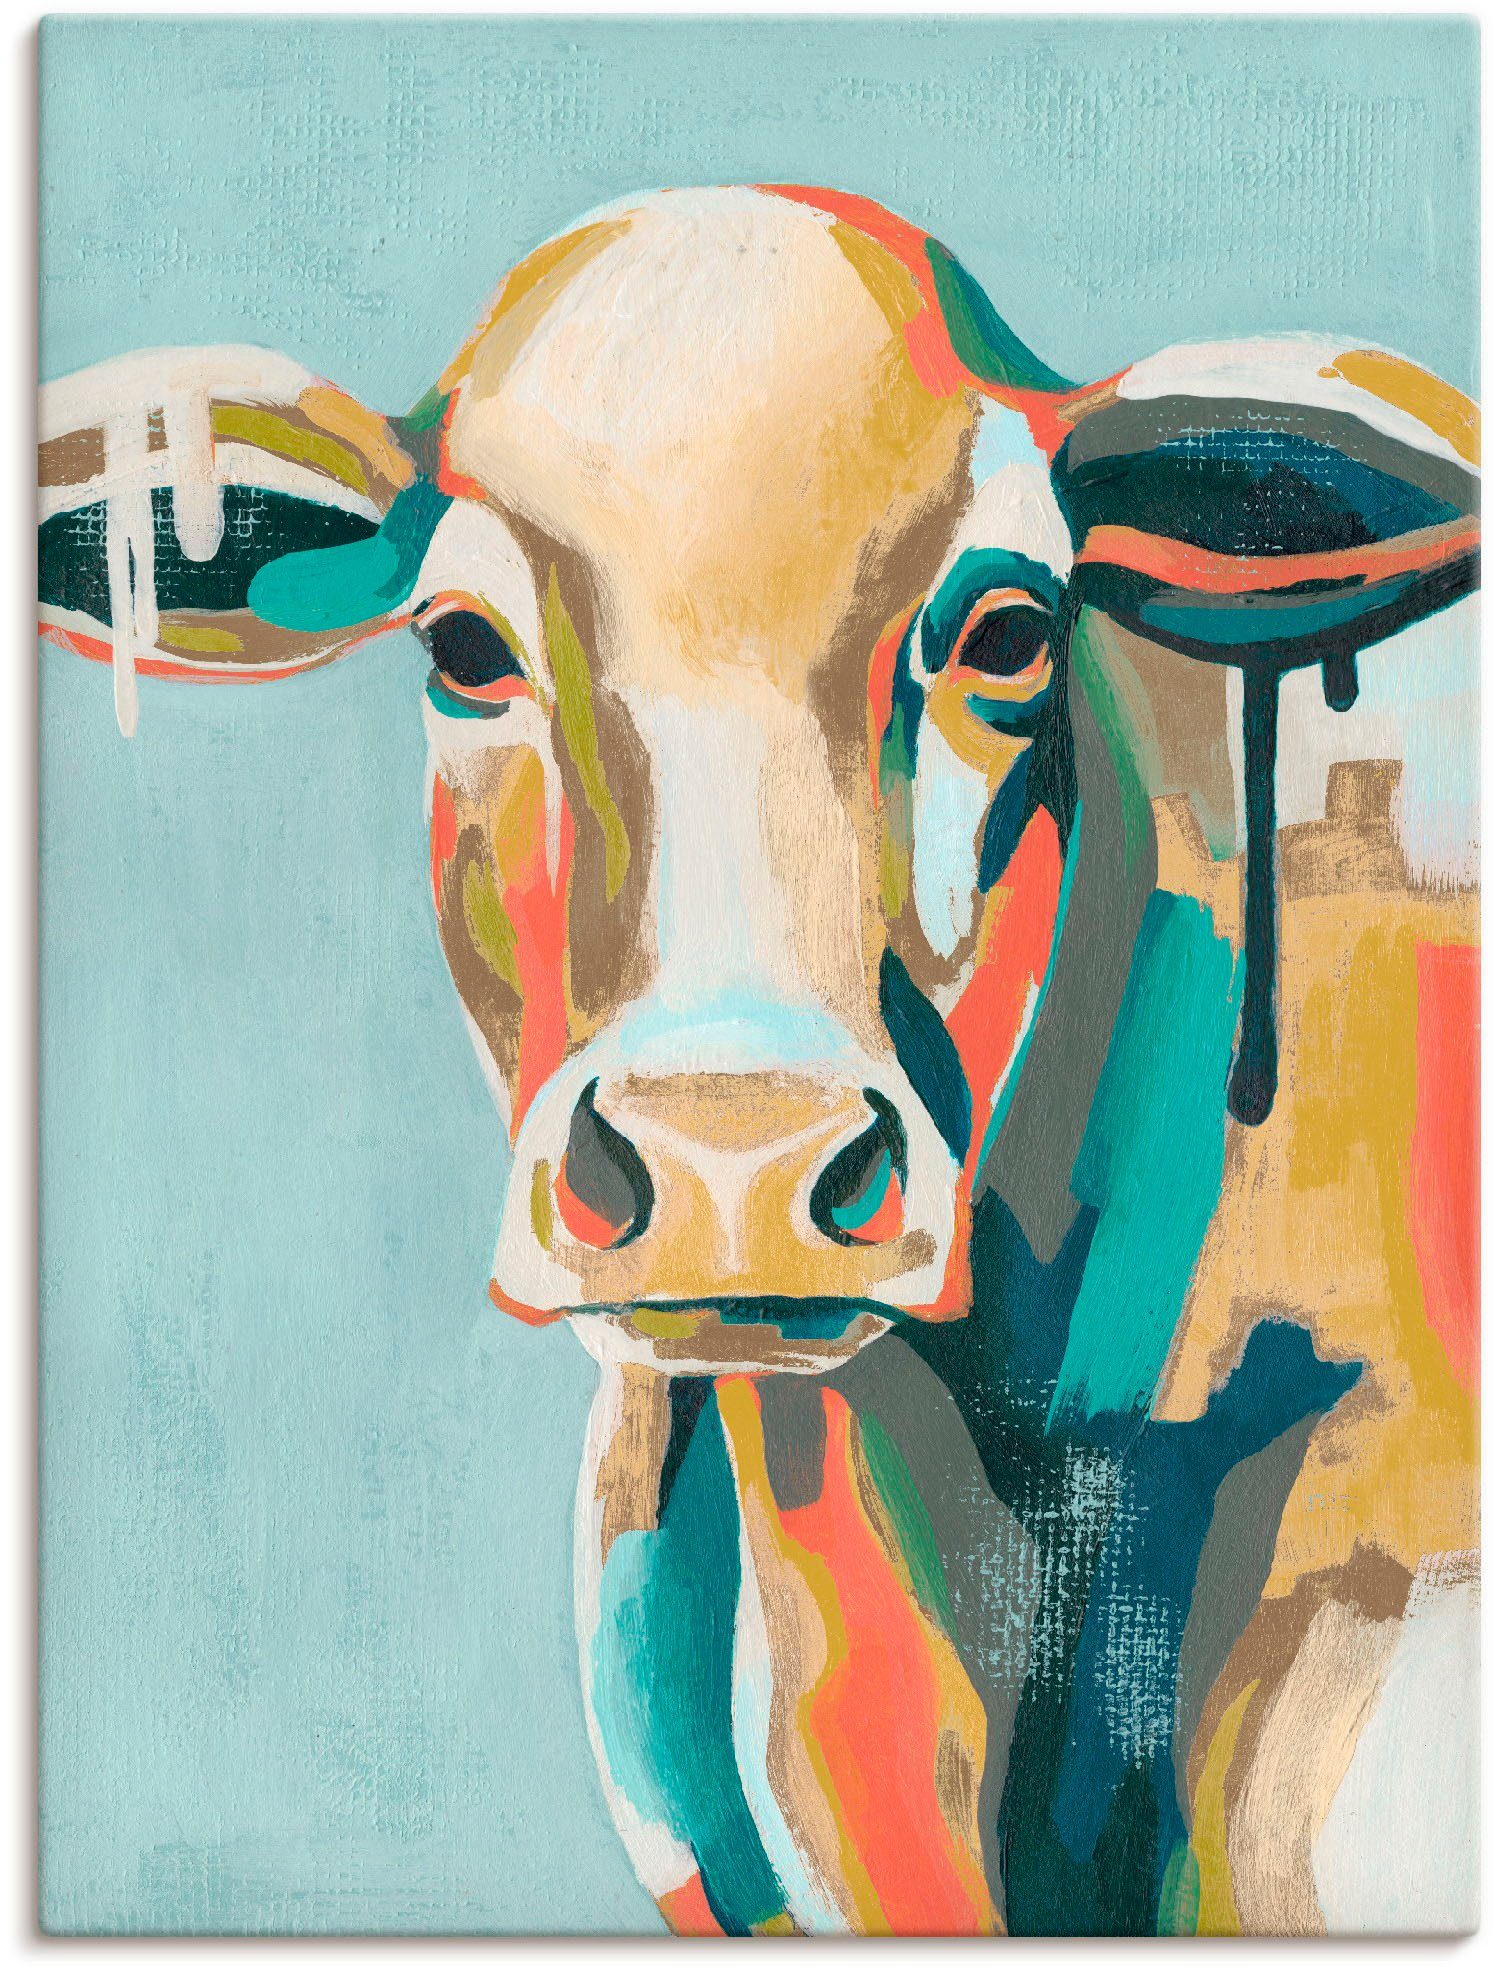 Artland Artprint Veelkleurige koeien I in vele afmetingen & productsoorten - artprint van aluminium / artprint voor buiten, artprint op linnen, poster, muursticker / wandfolie ook